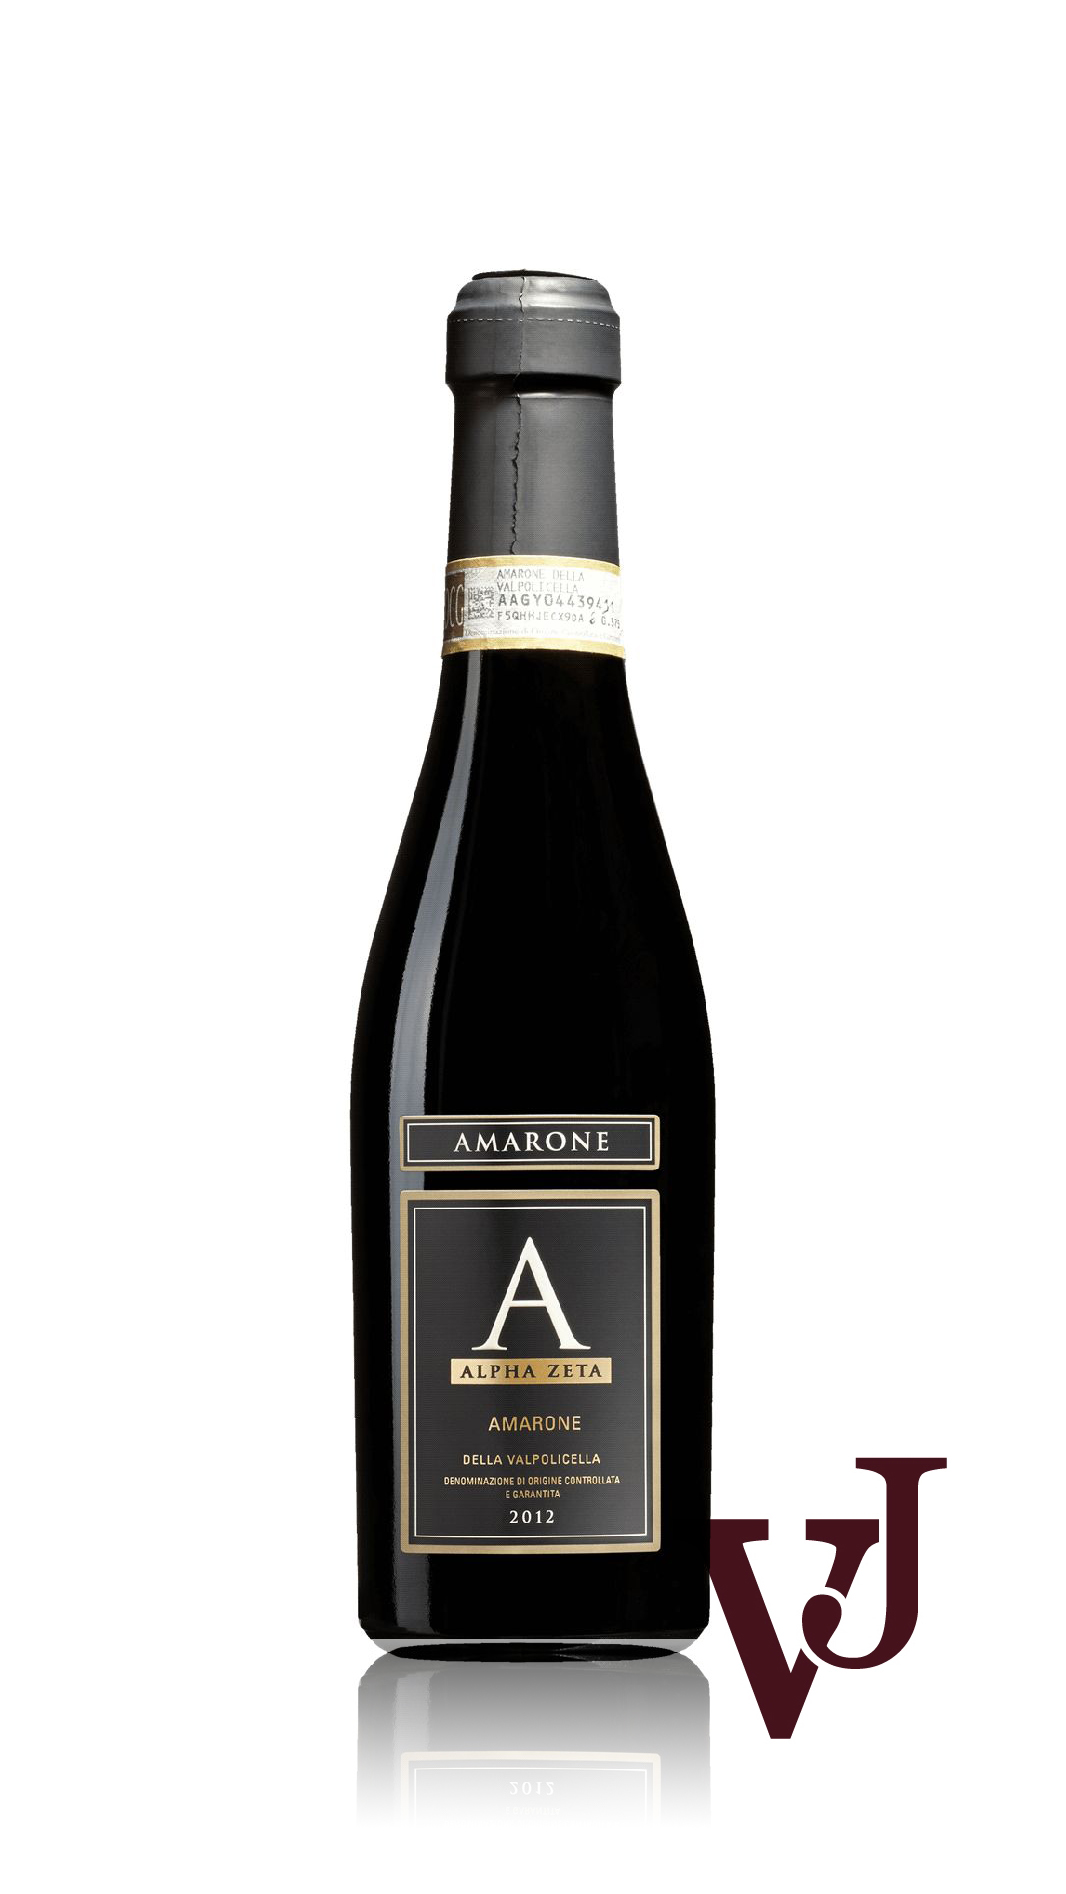 Rött Vin - Amarone A Alpha Zeta artikel nummer 1234302 från producenten Alpha Zeta från området Italien